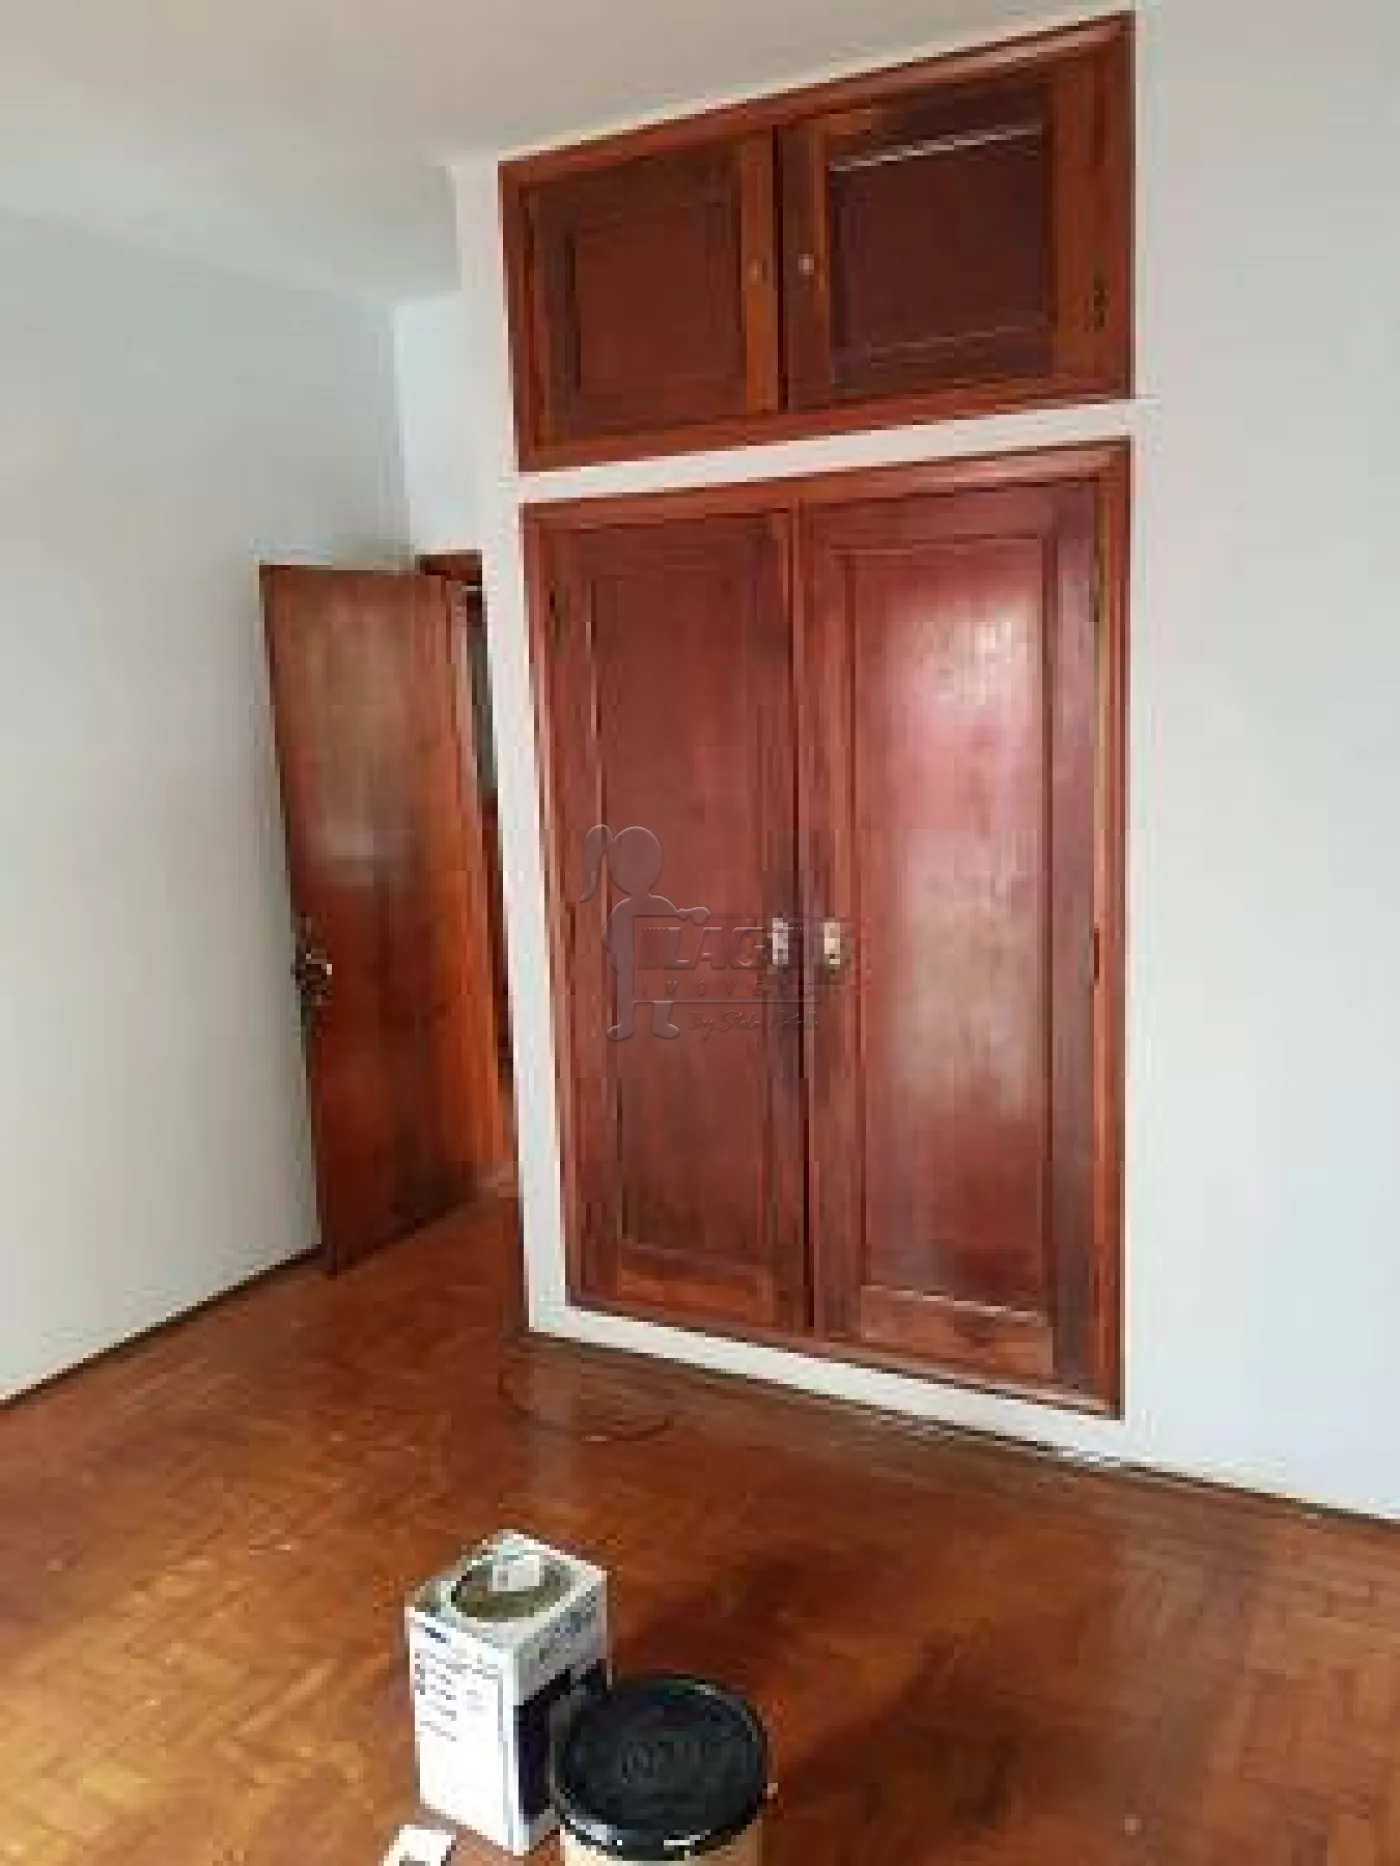 Alugar Casa / Padrão em Ribeirão Preto R$ 1.900,00 - Foto 13